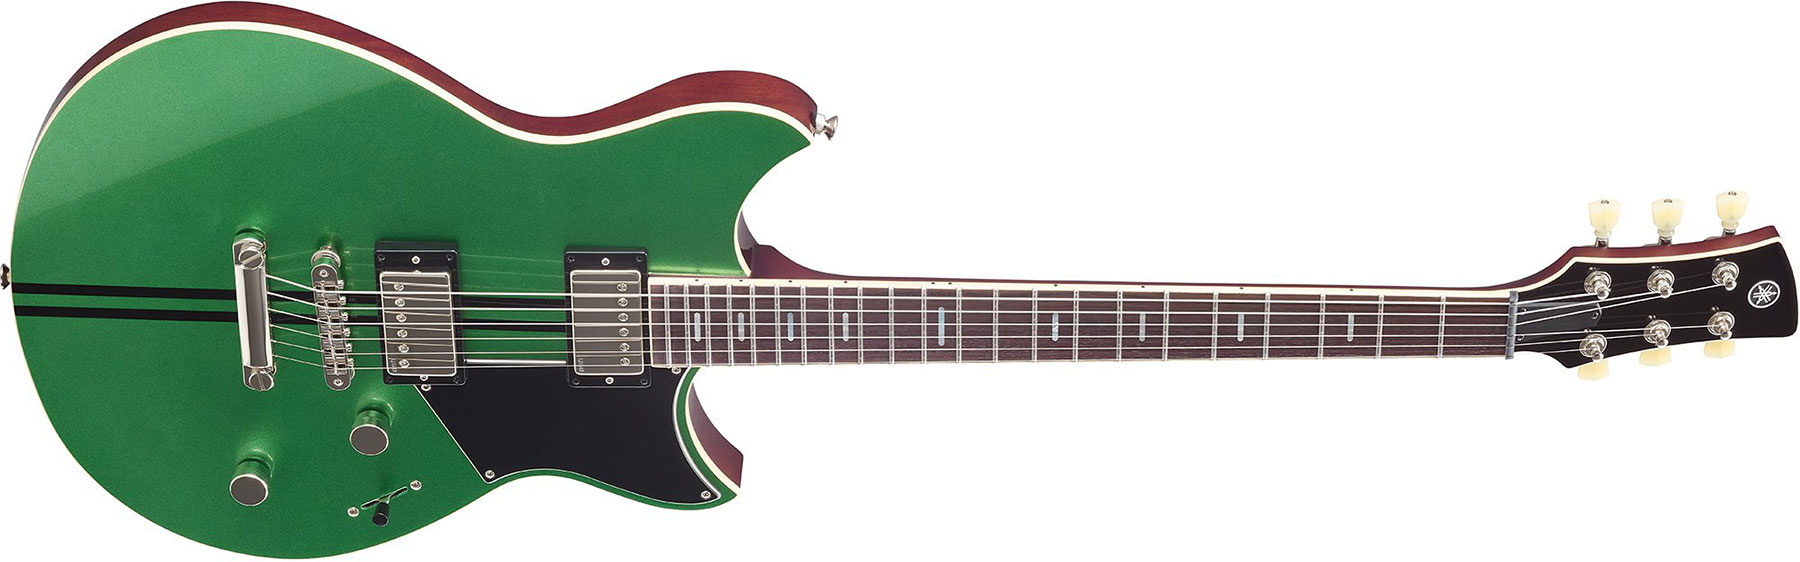 Yamaha Rss20 Revstar Standard Hh Ht Rw - Flash Green - Guitare Électrique Double Cut - Variation 1